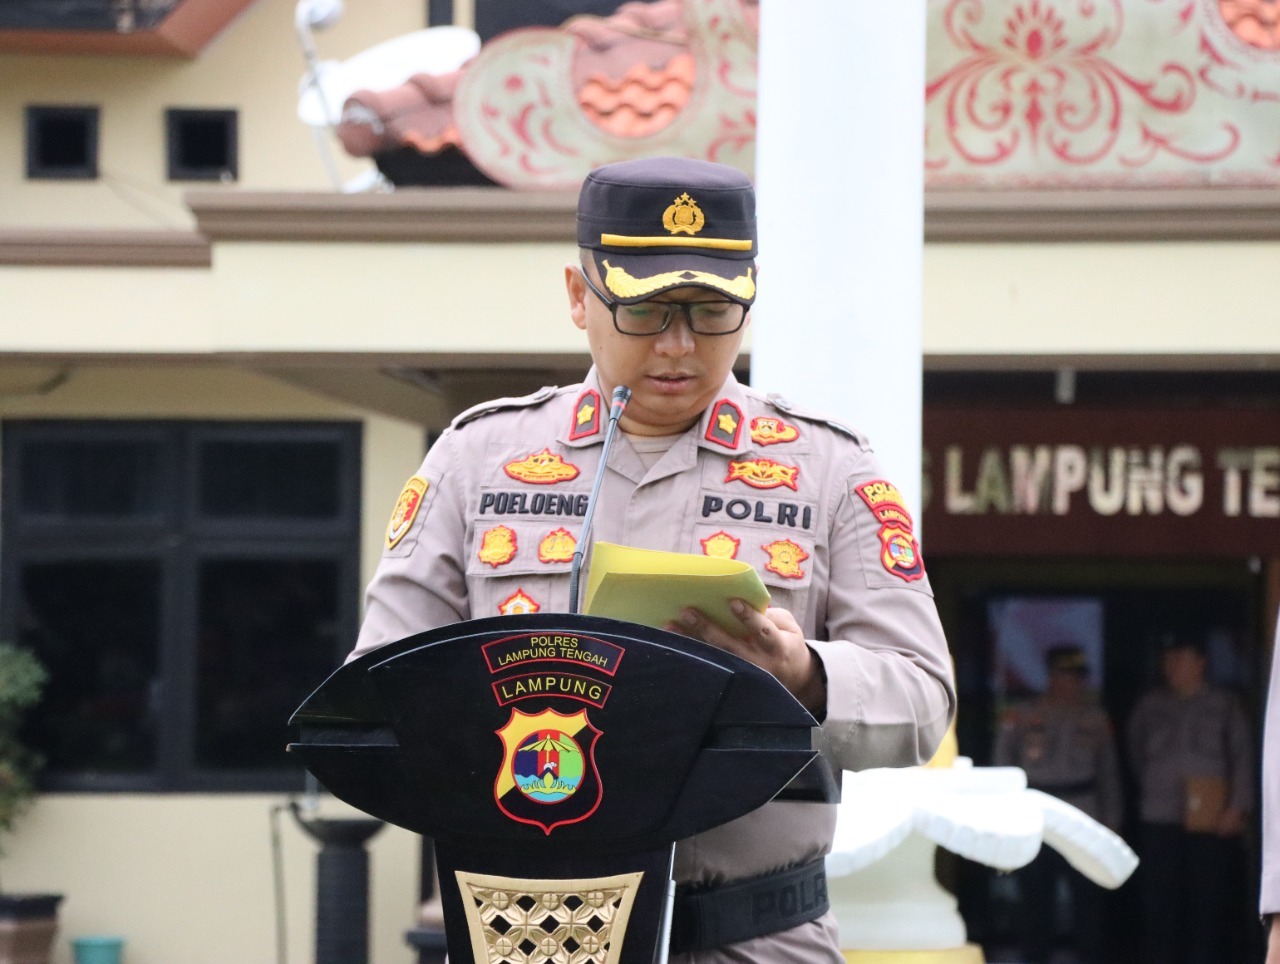 Upacara Korp Raport Kenaikan Pangkat 63 Personel Polres Lampung Tengah di Awal Tahun 2023